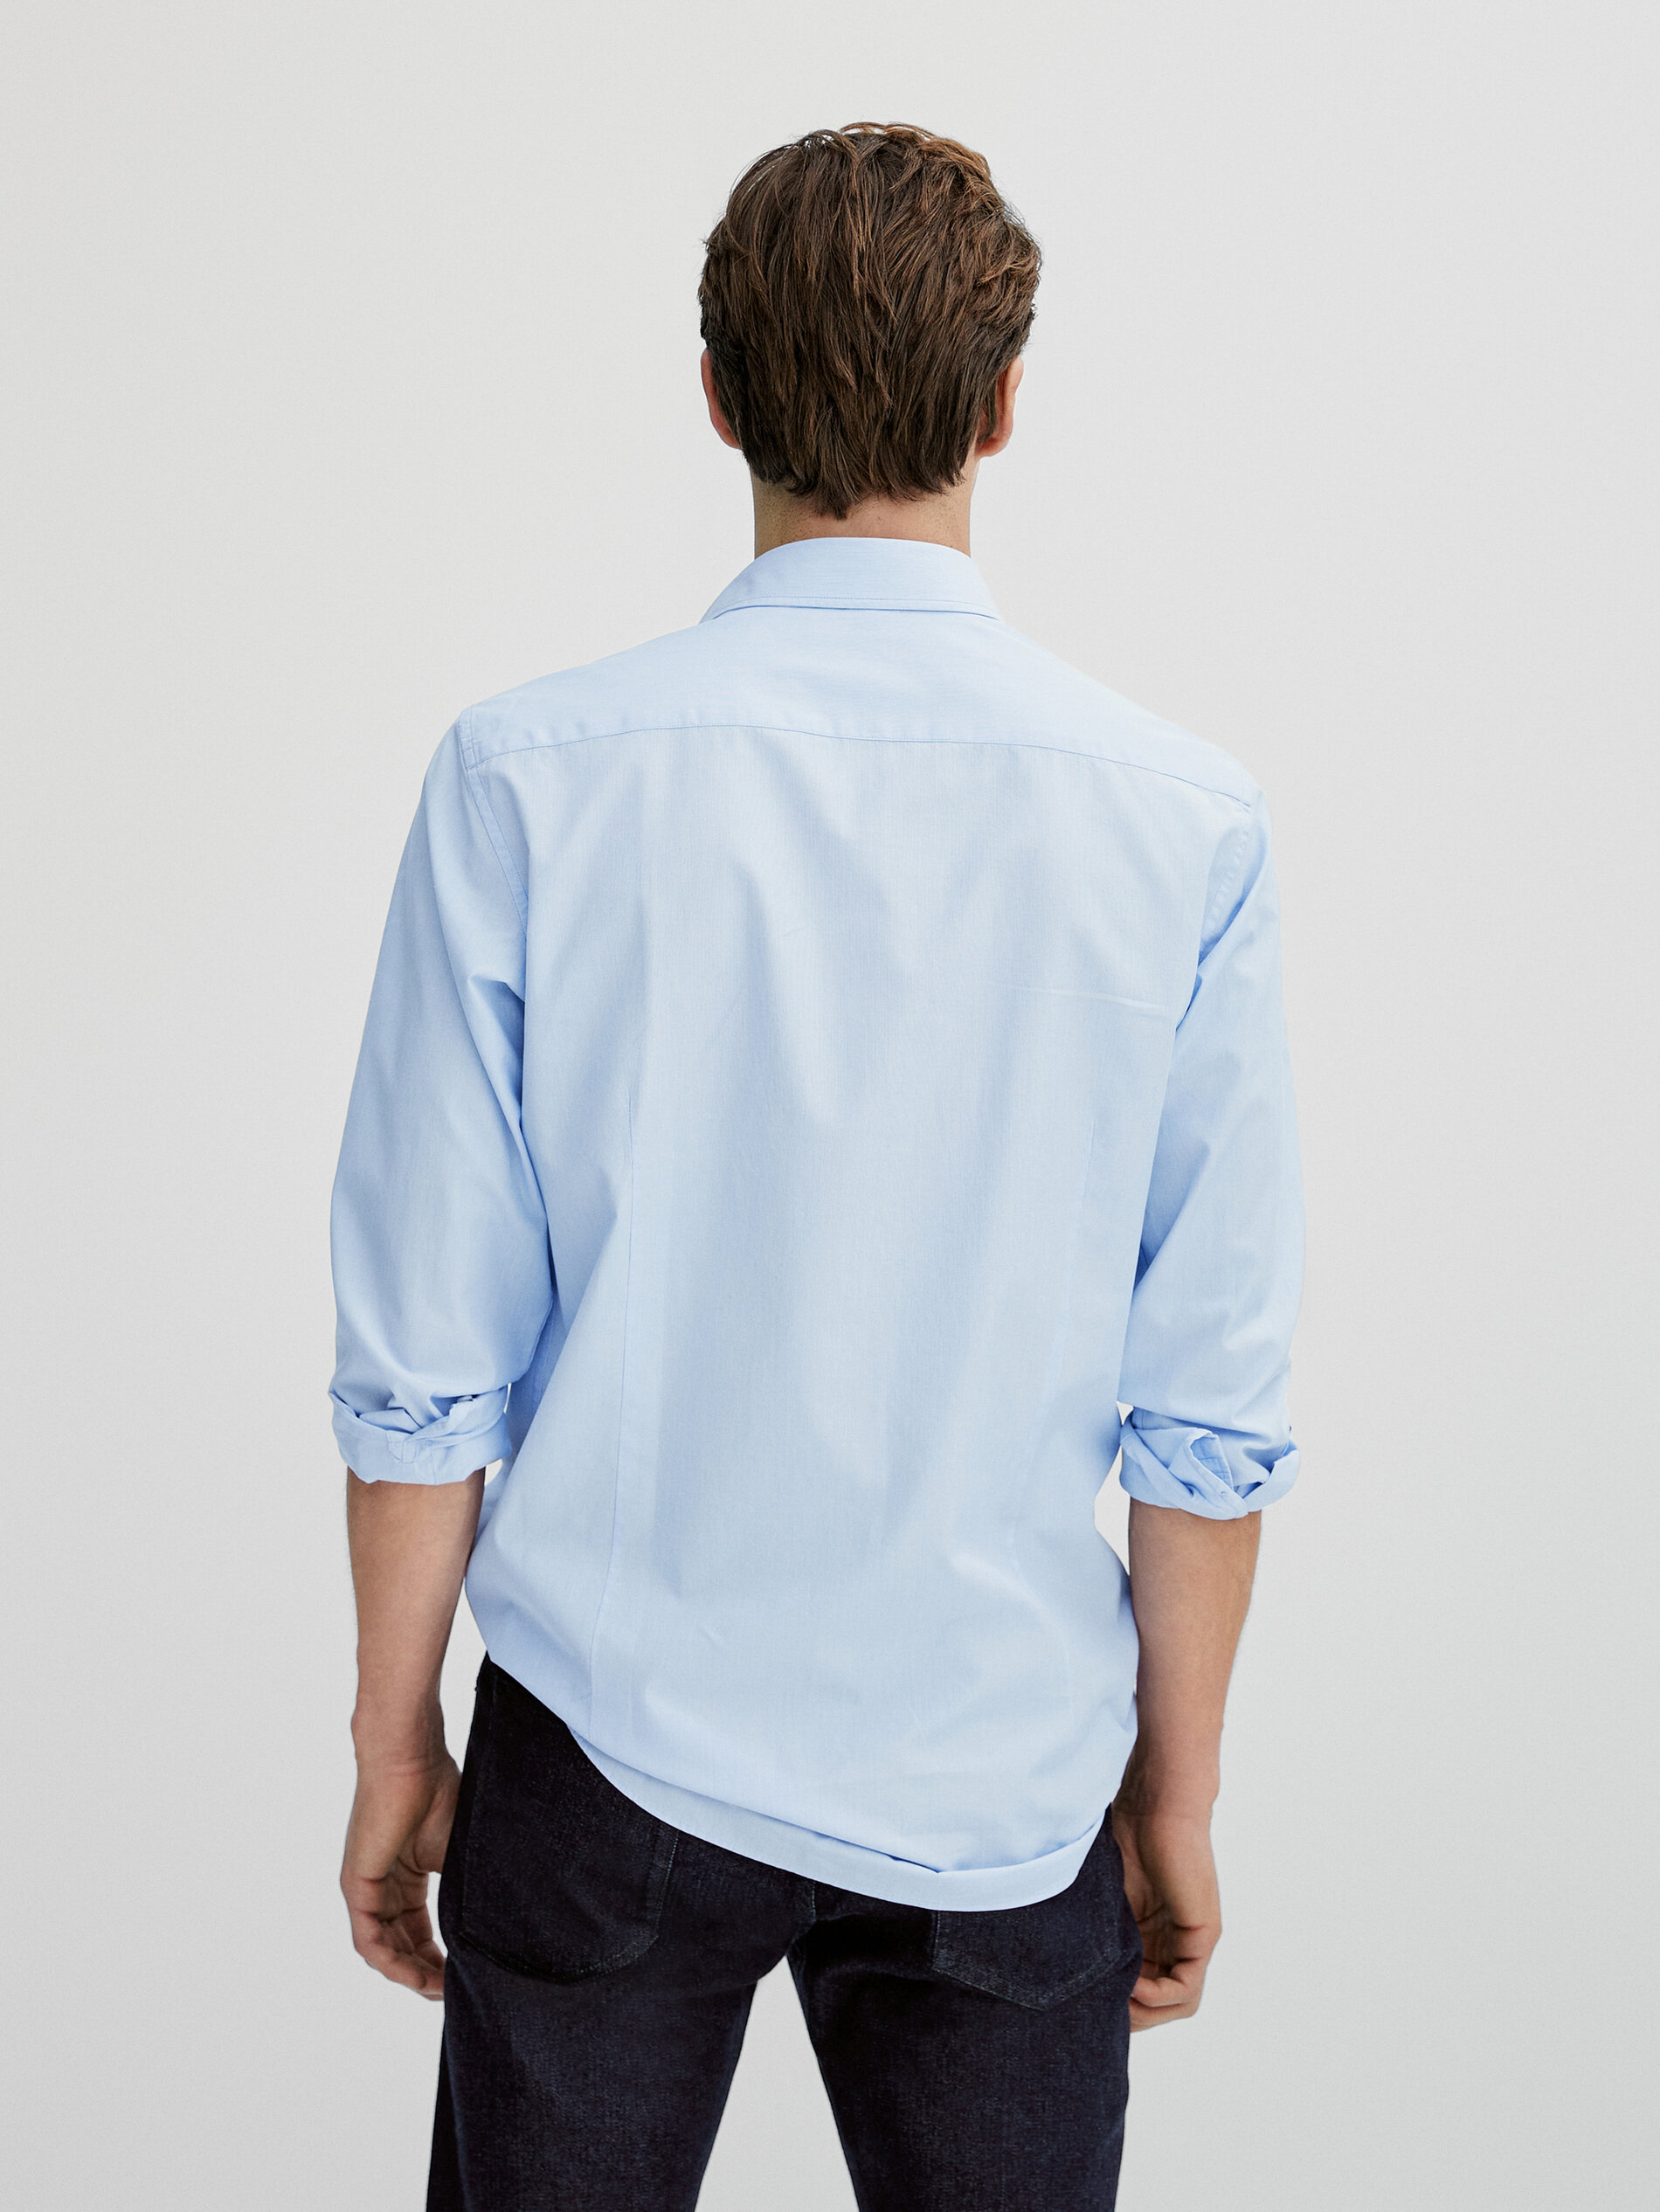 Slim-fit premium cotton false plain shirt - Massimo Dutti Israel